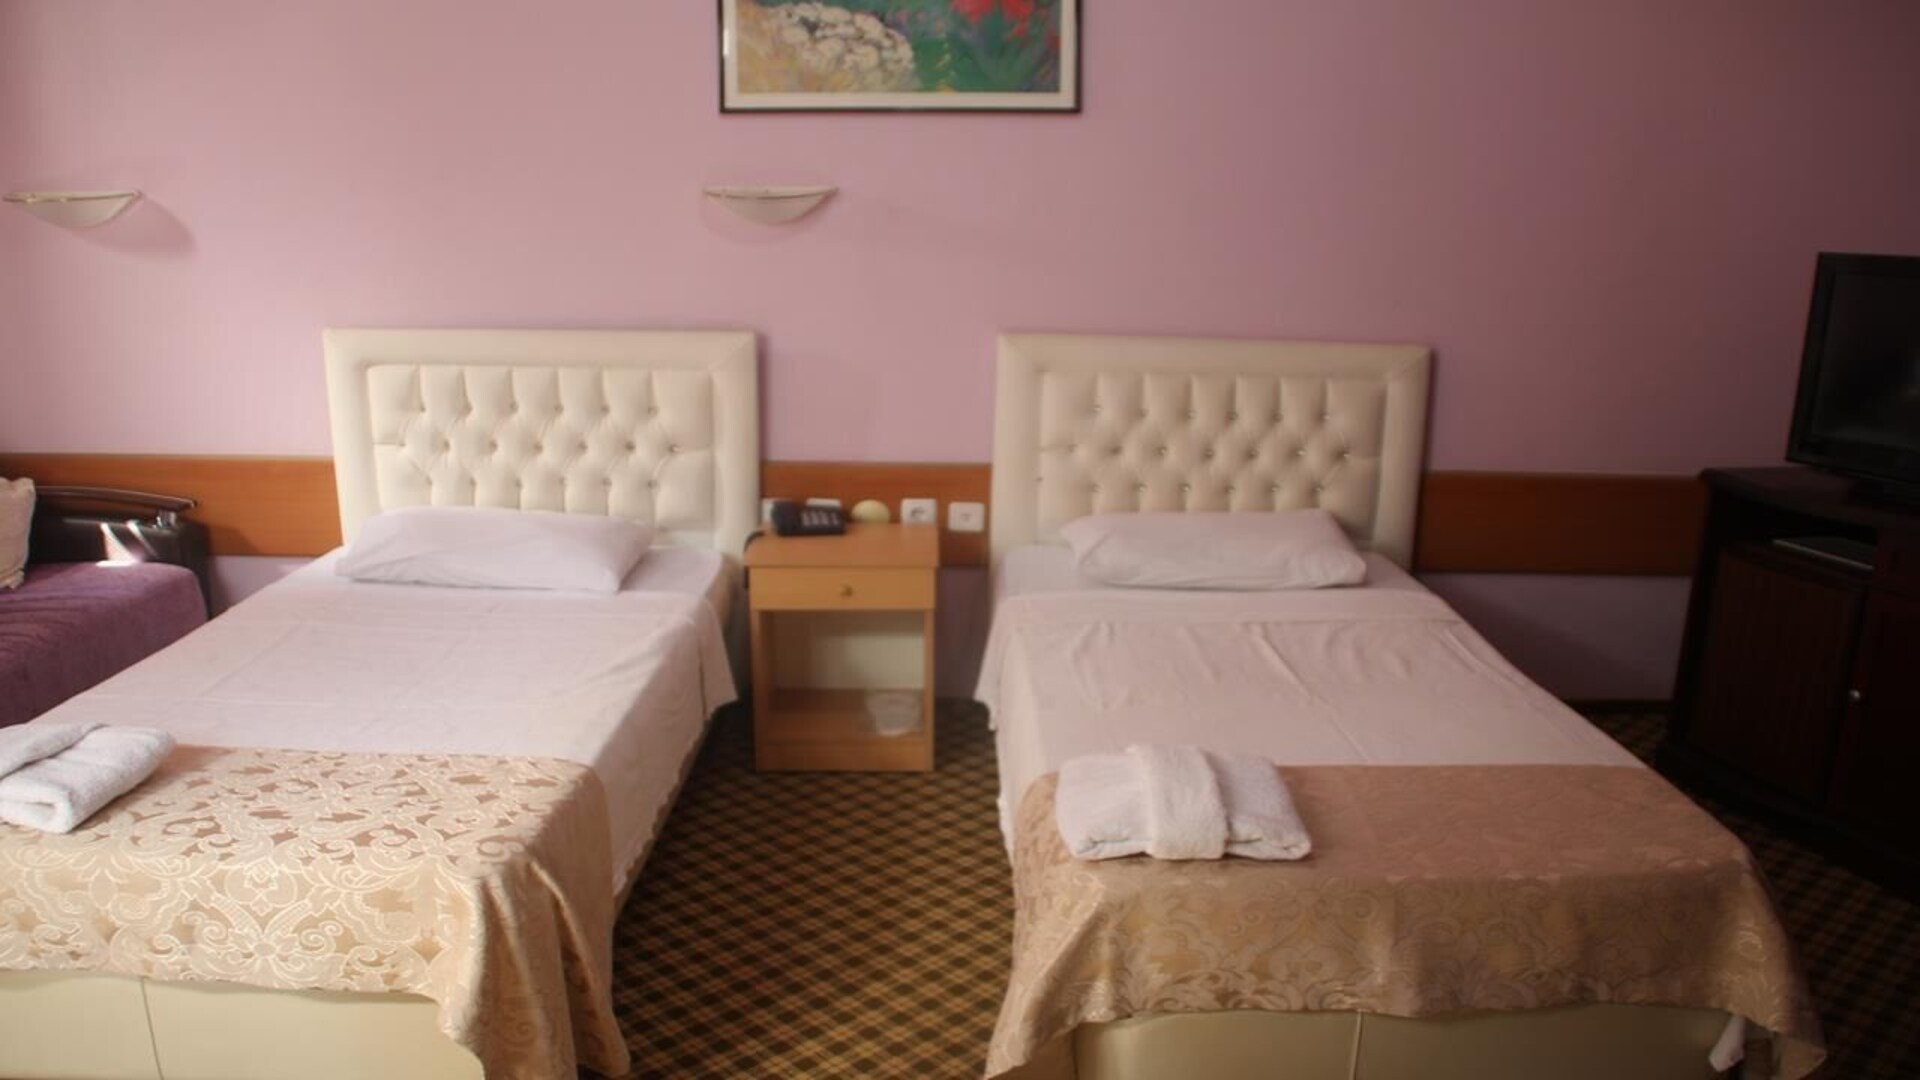 Hotel Karyatit Kaleiçi (Hotel Karyatit Kaleici)